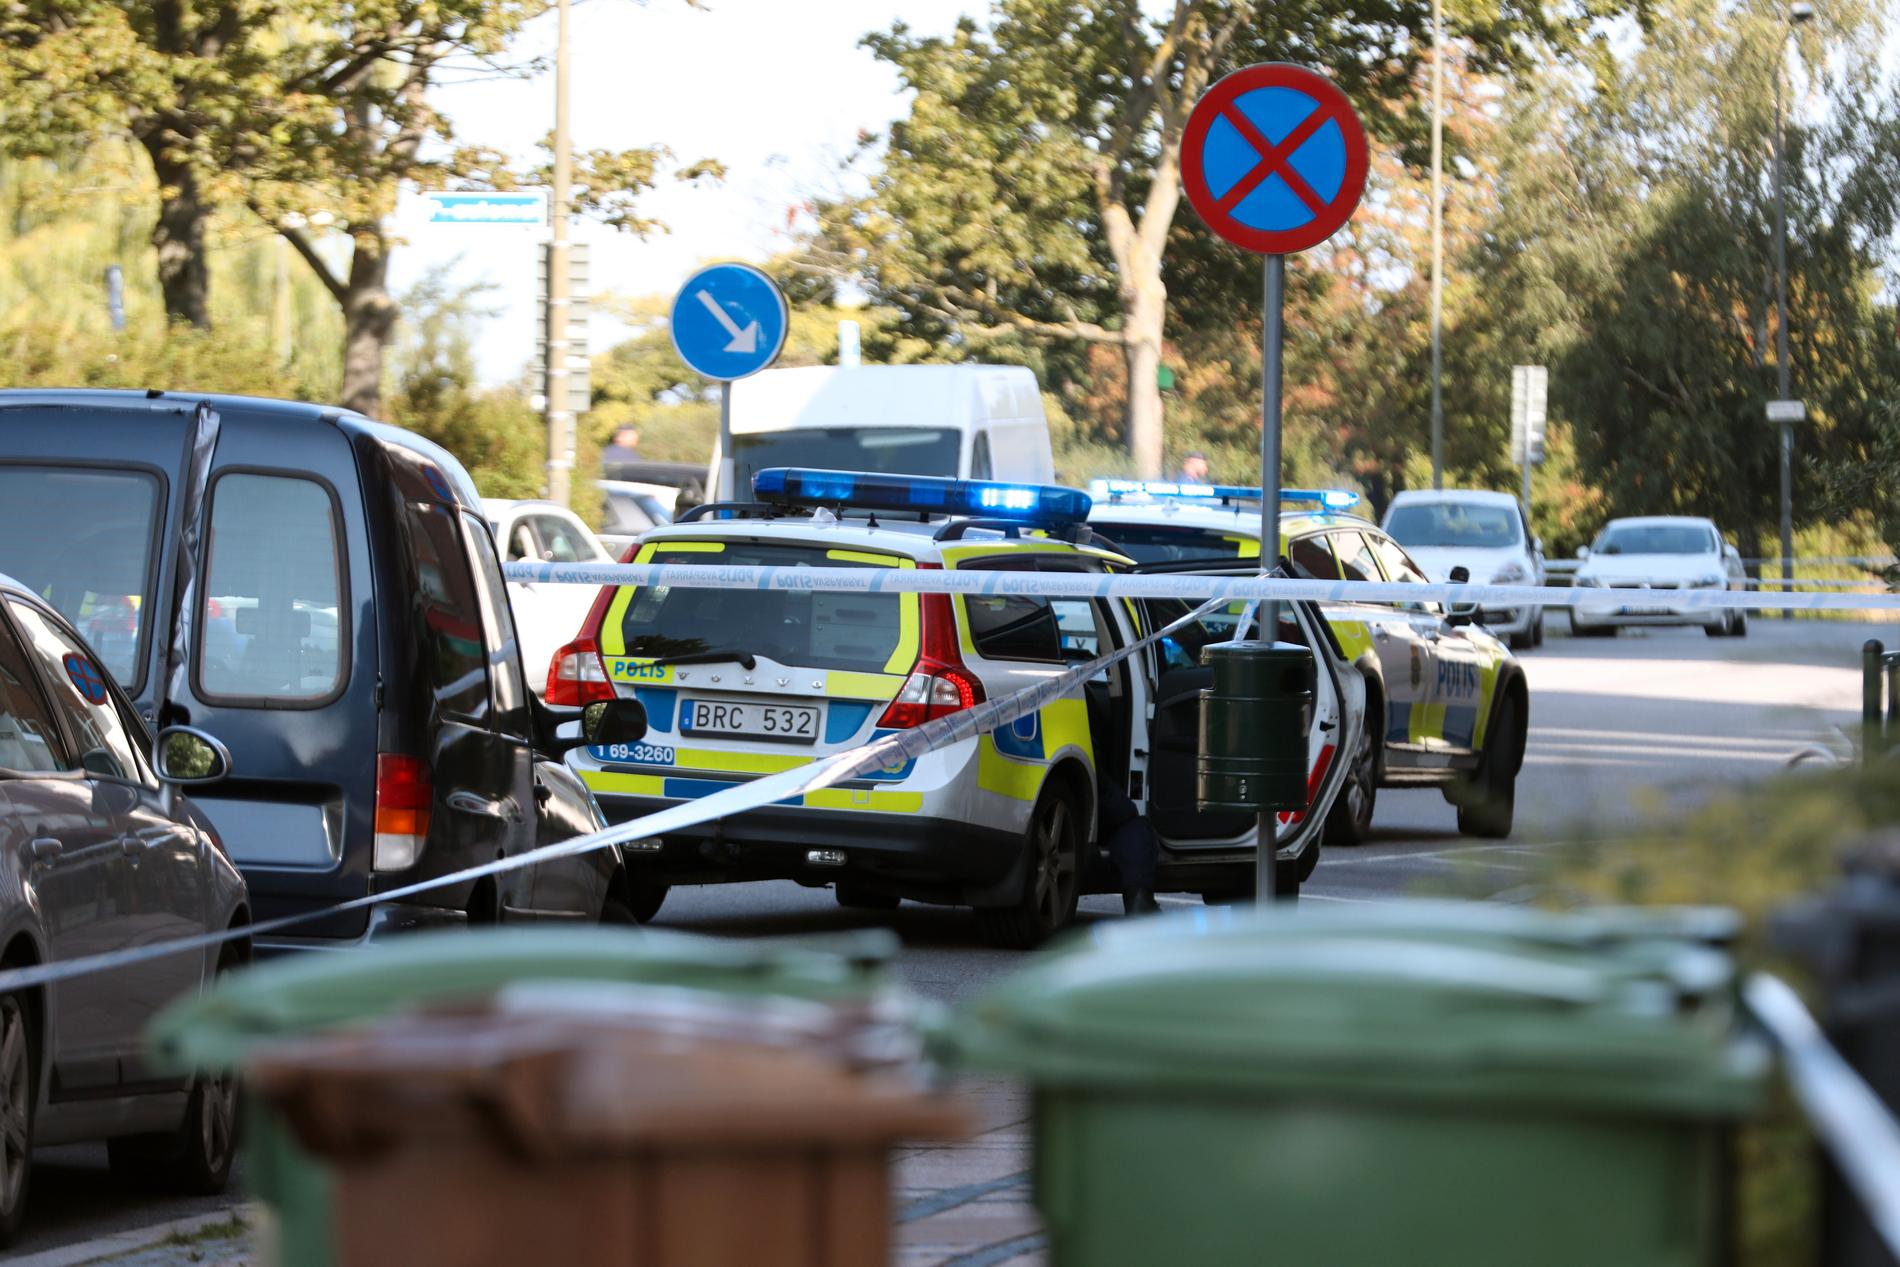 En person är allvarligt skadad efter en skjutning vid Ribersborg i Malmö. Enligt uppgifter till Aftonbladet är den skadade en kvinna i 30-årsåldern.